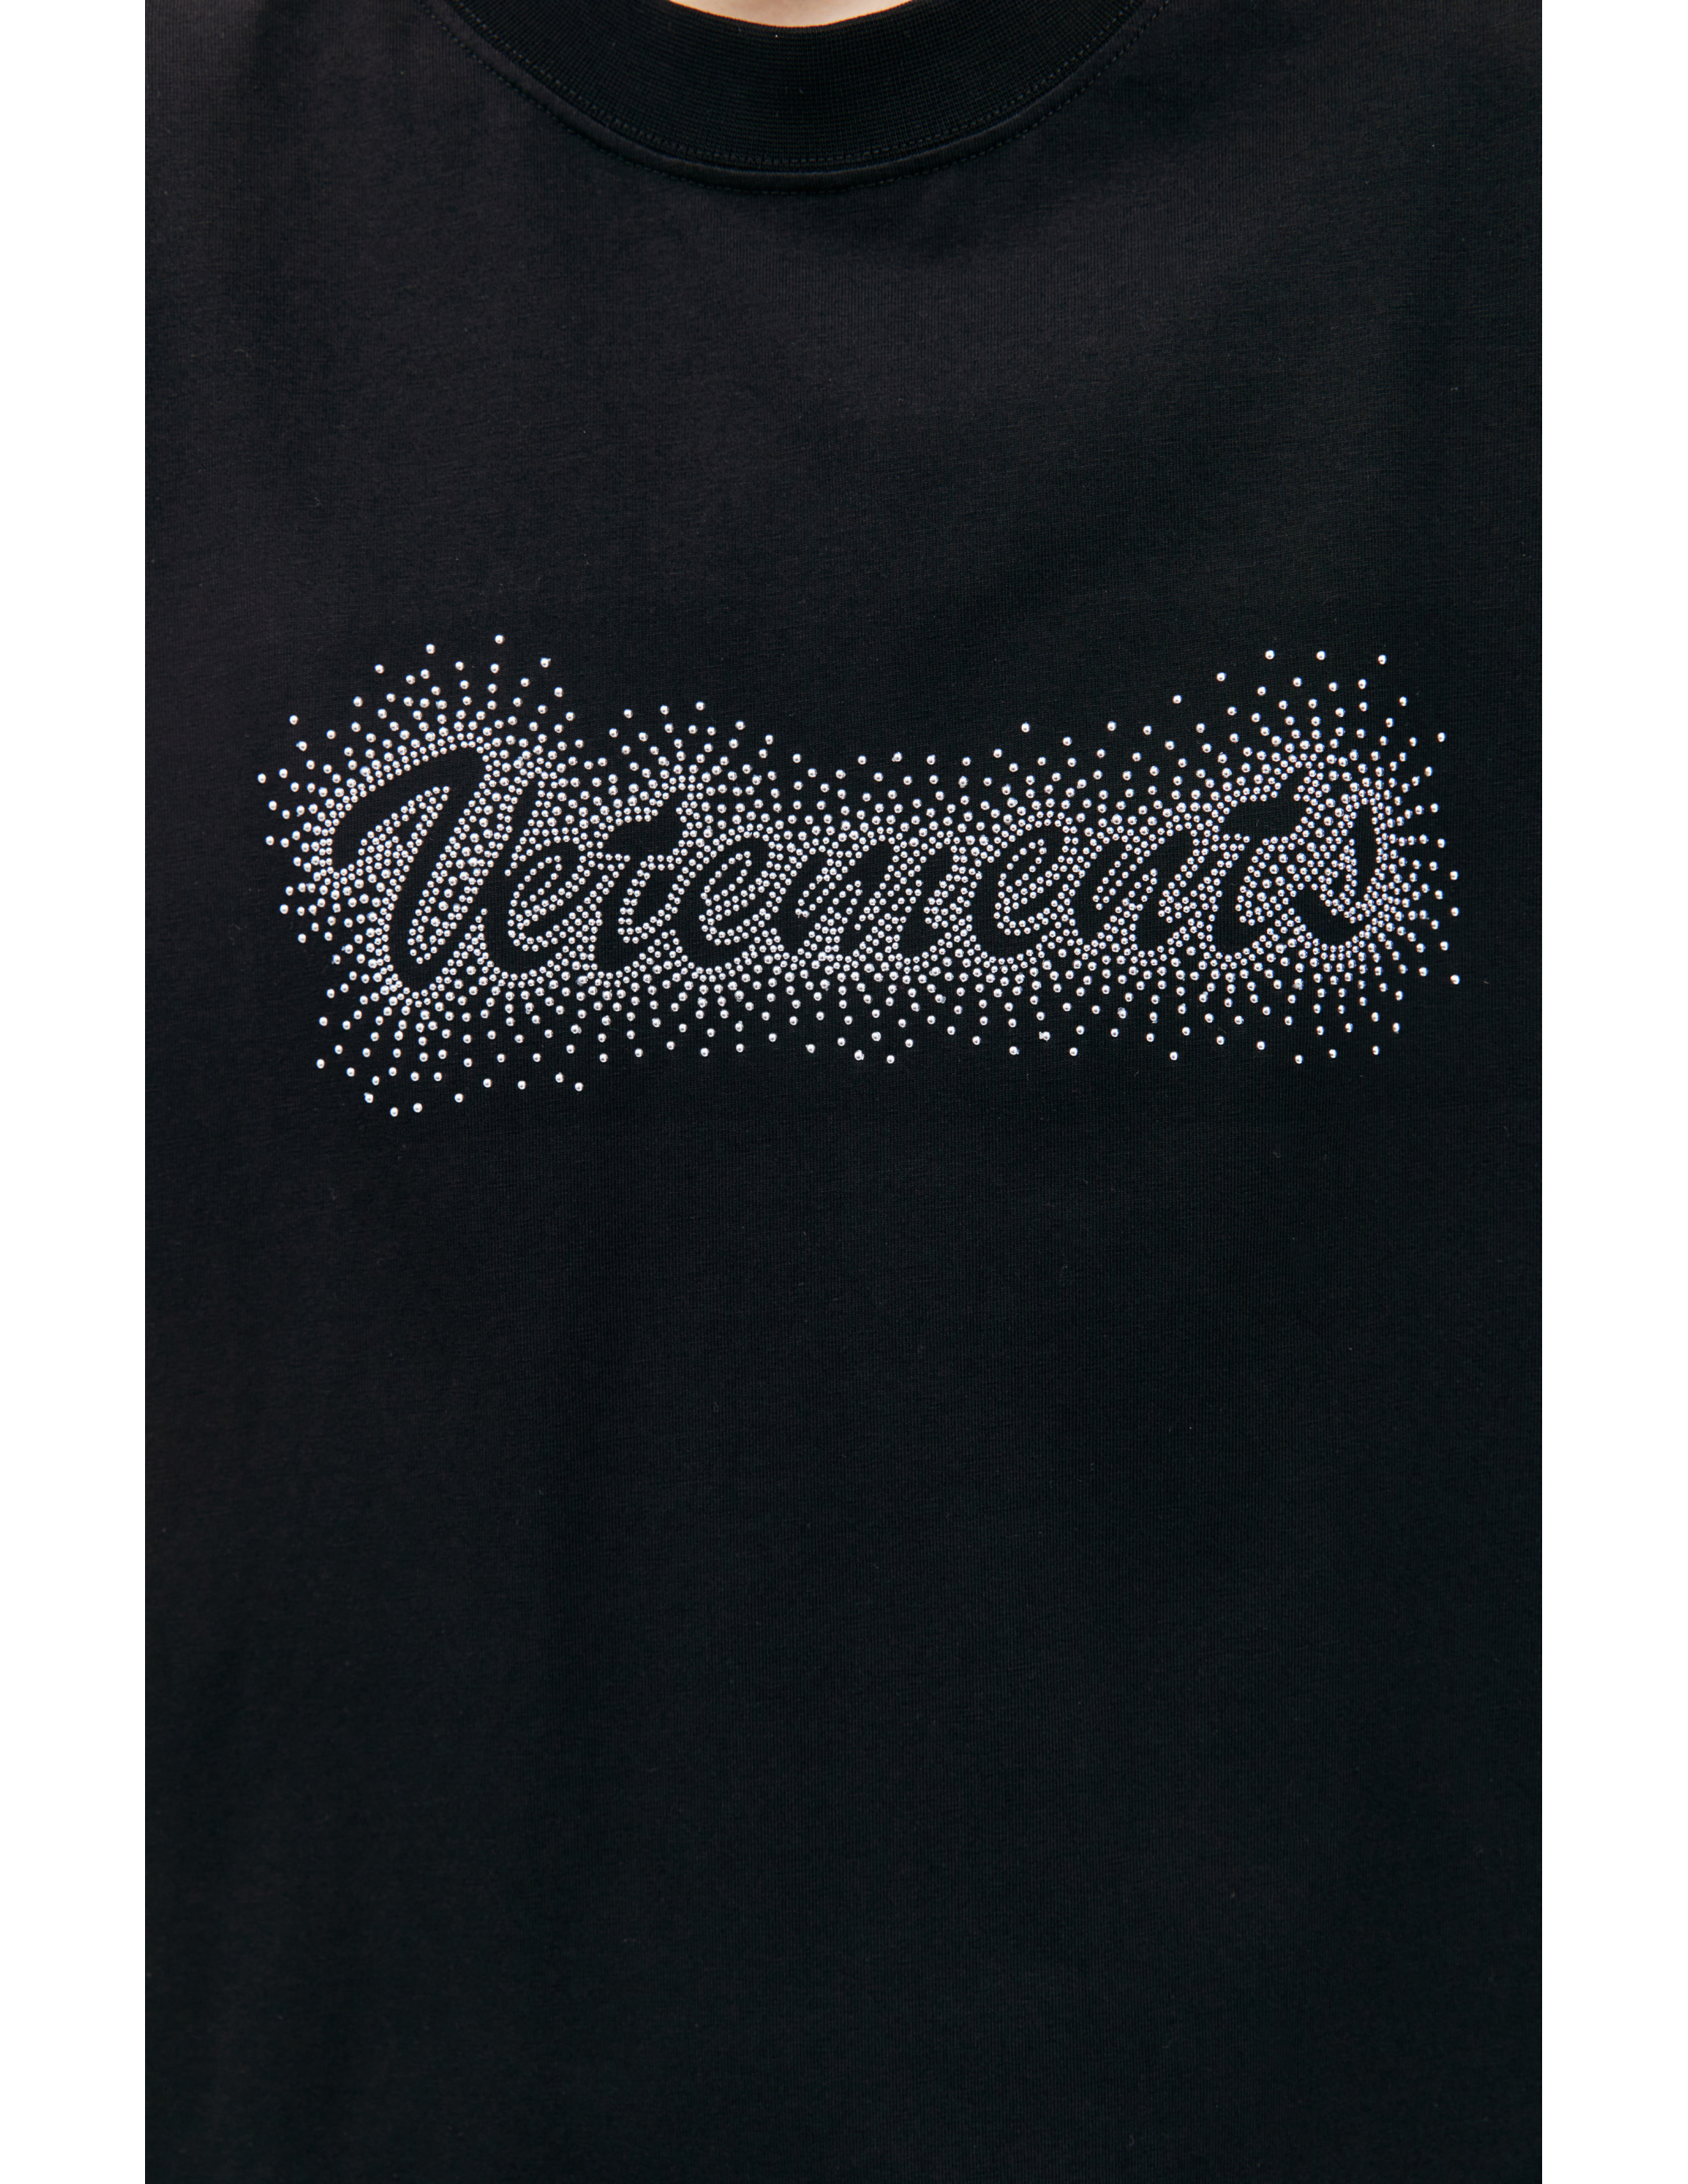 Оверсайз футболка с логотипом VETEMENTS UE64TR360B, размер S;M;L;XL - фото 4